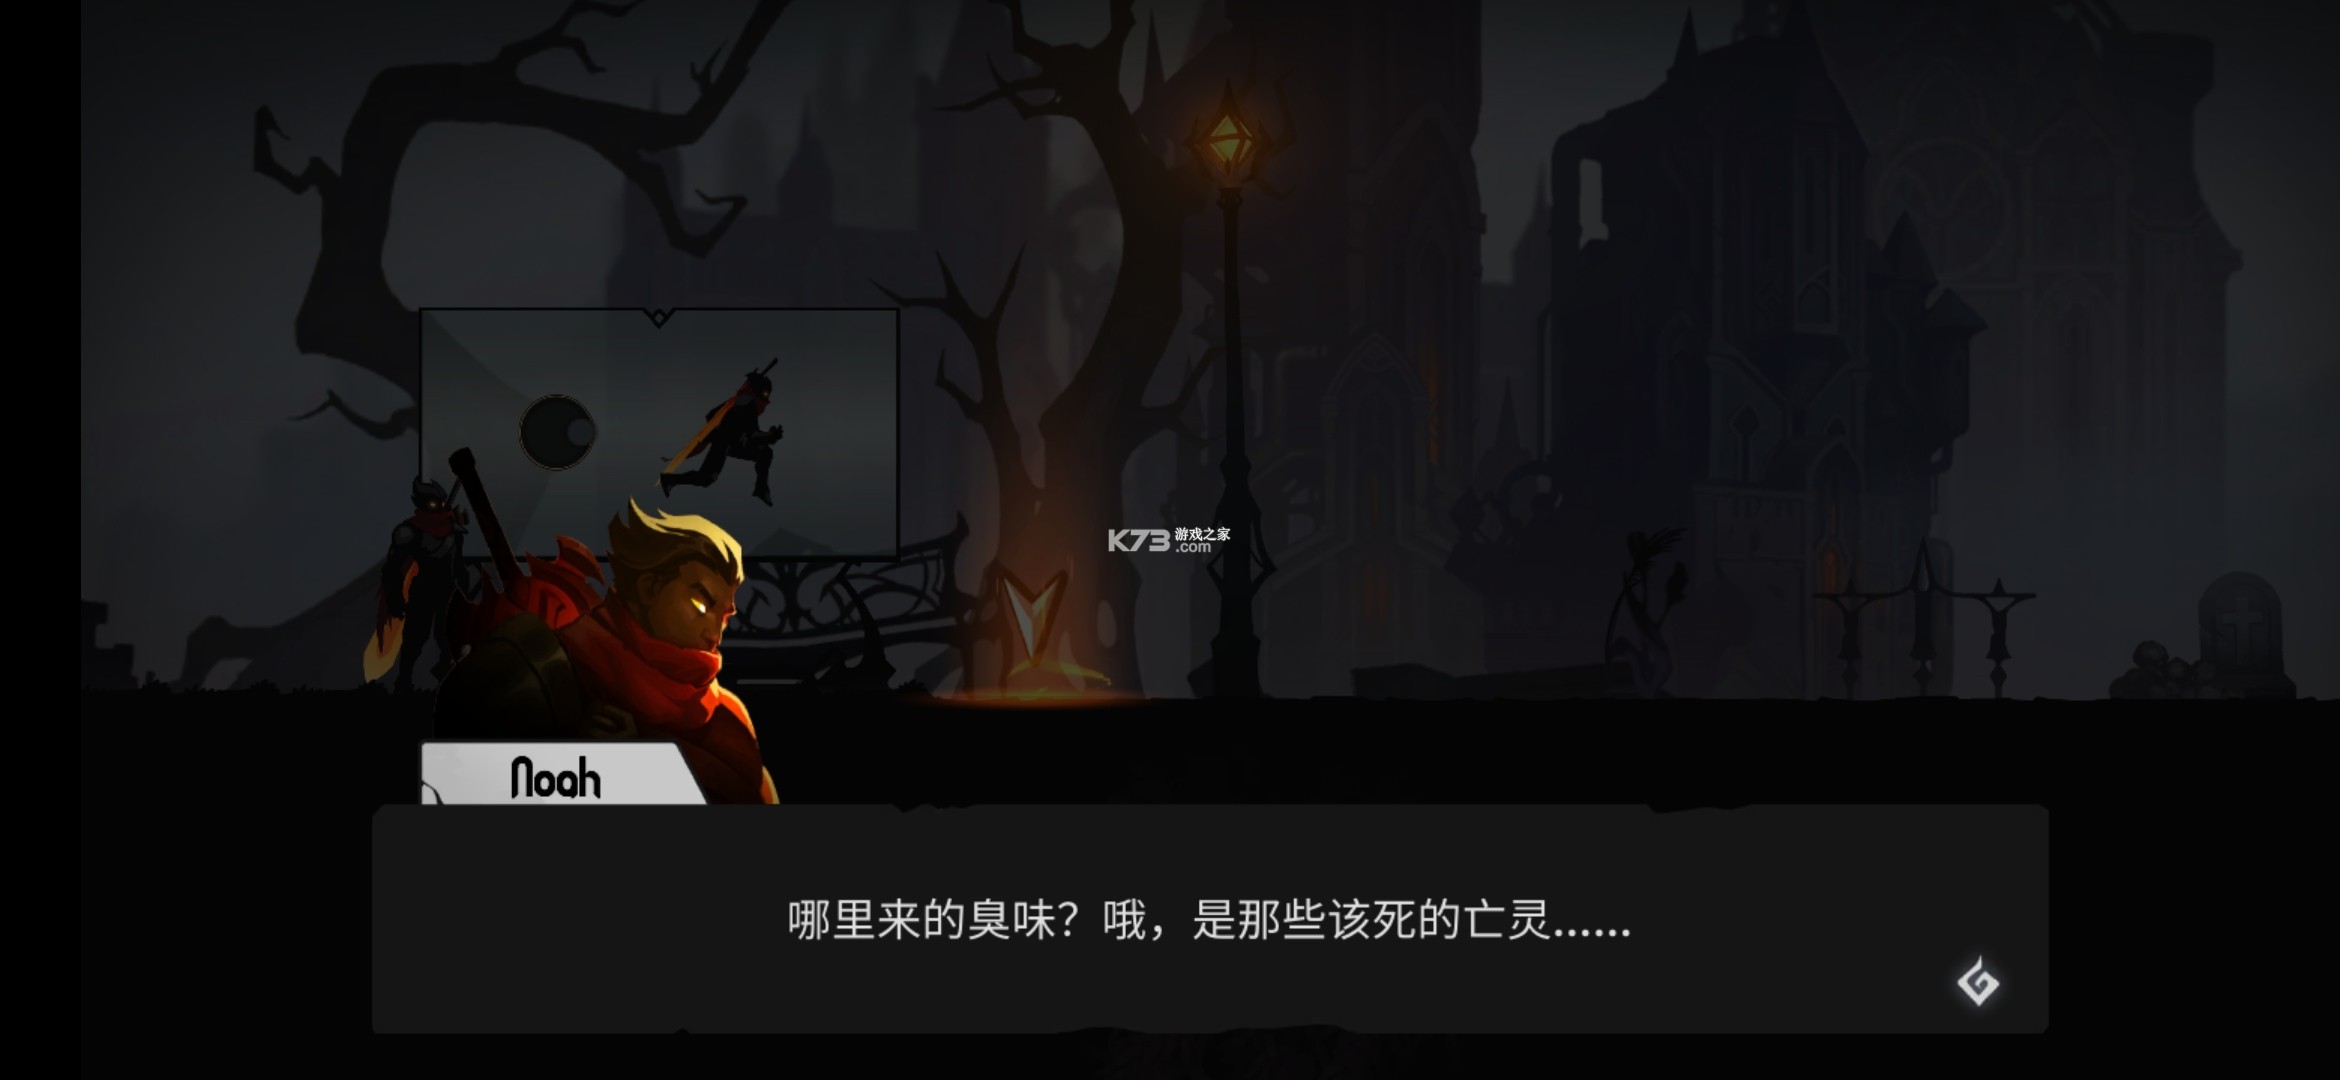 暗影骑士绝命旅途 v3.14.99 中文破解版 截图